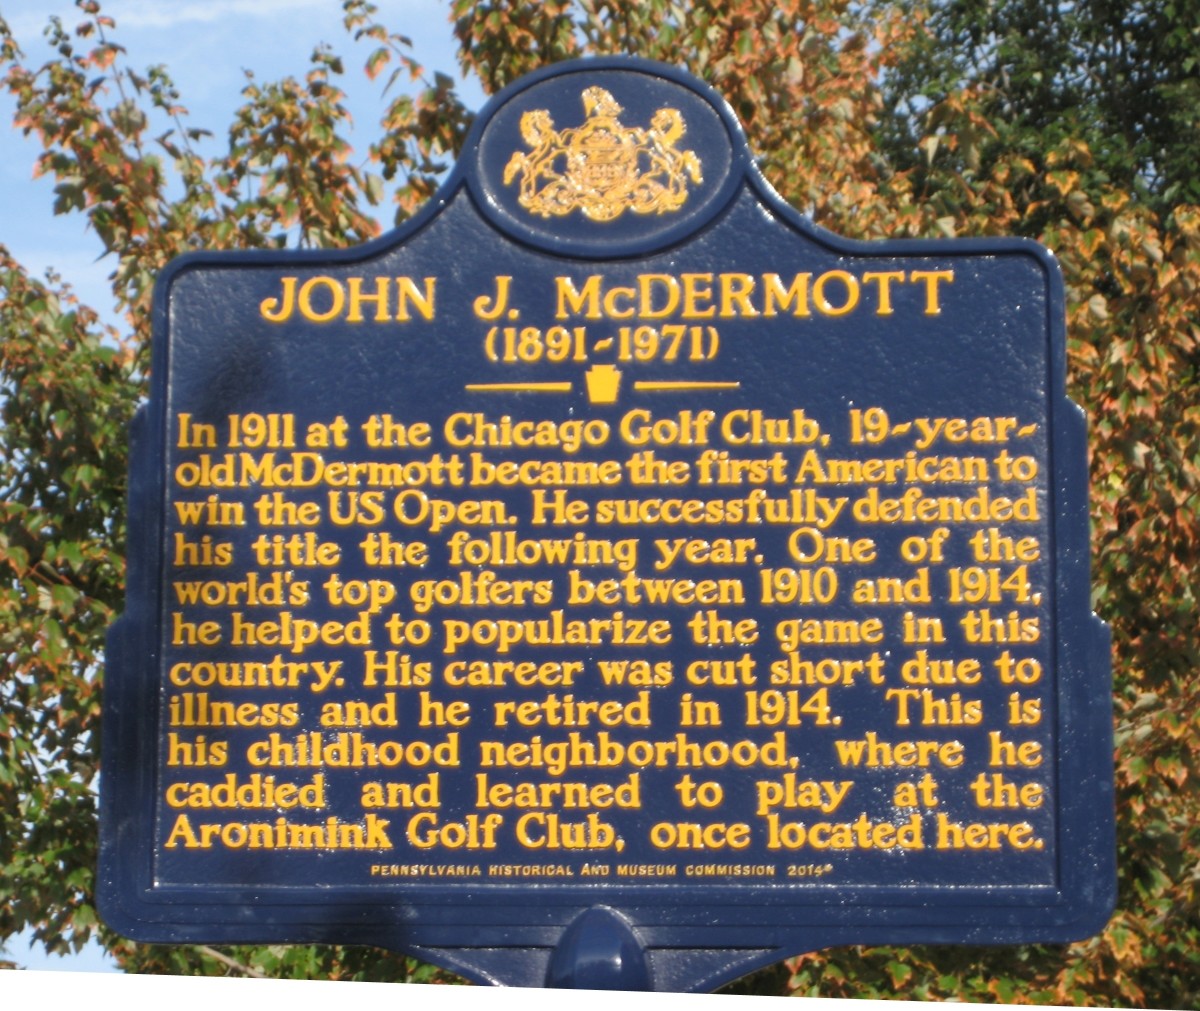 Pa. Historical Marker For John McDermott